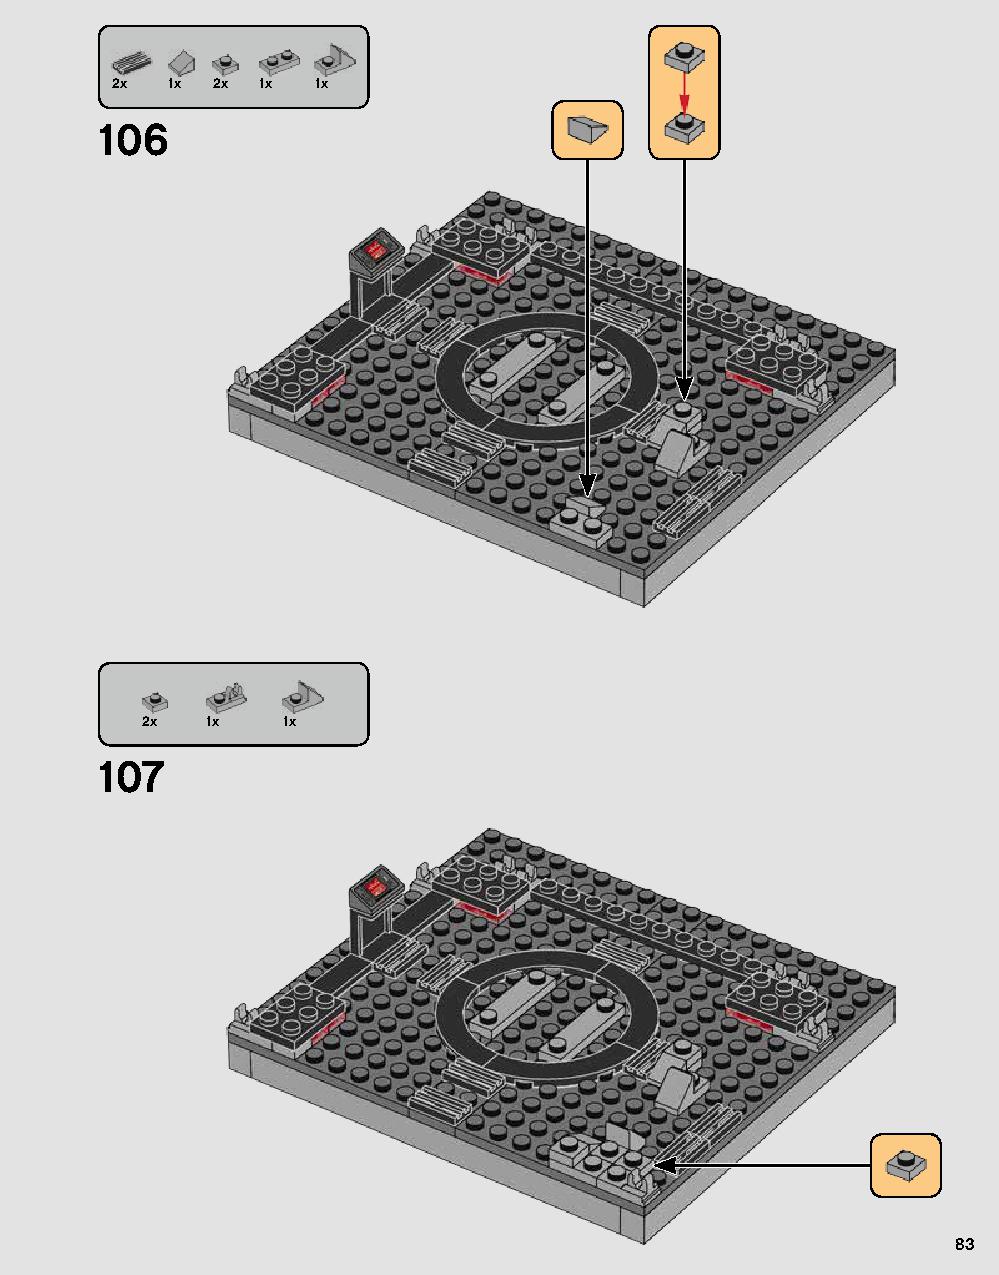 ダース・ベイダーの城 75251 レゴの商品情報 レゴの説明書・組立方法 83 page